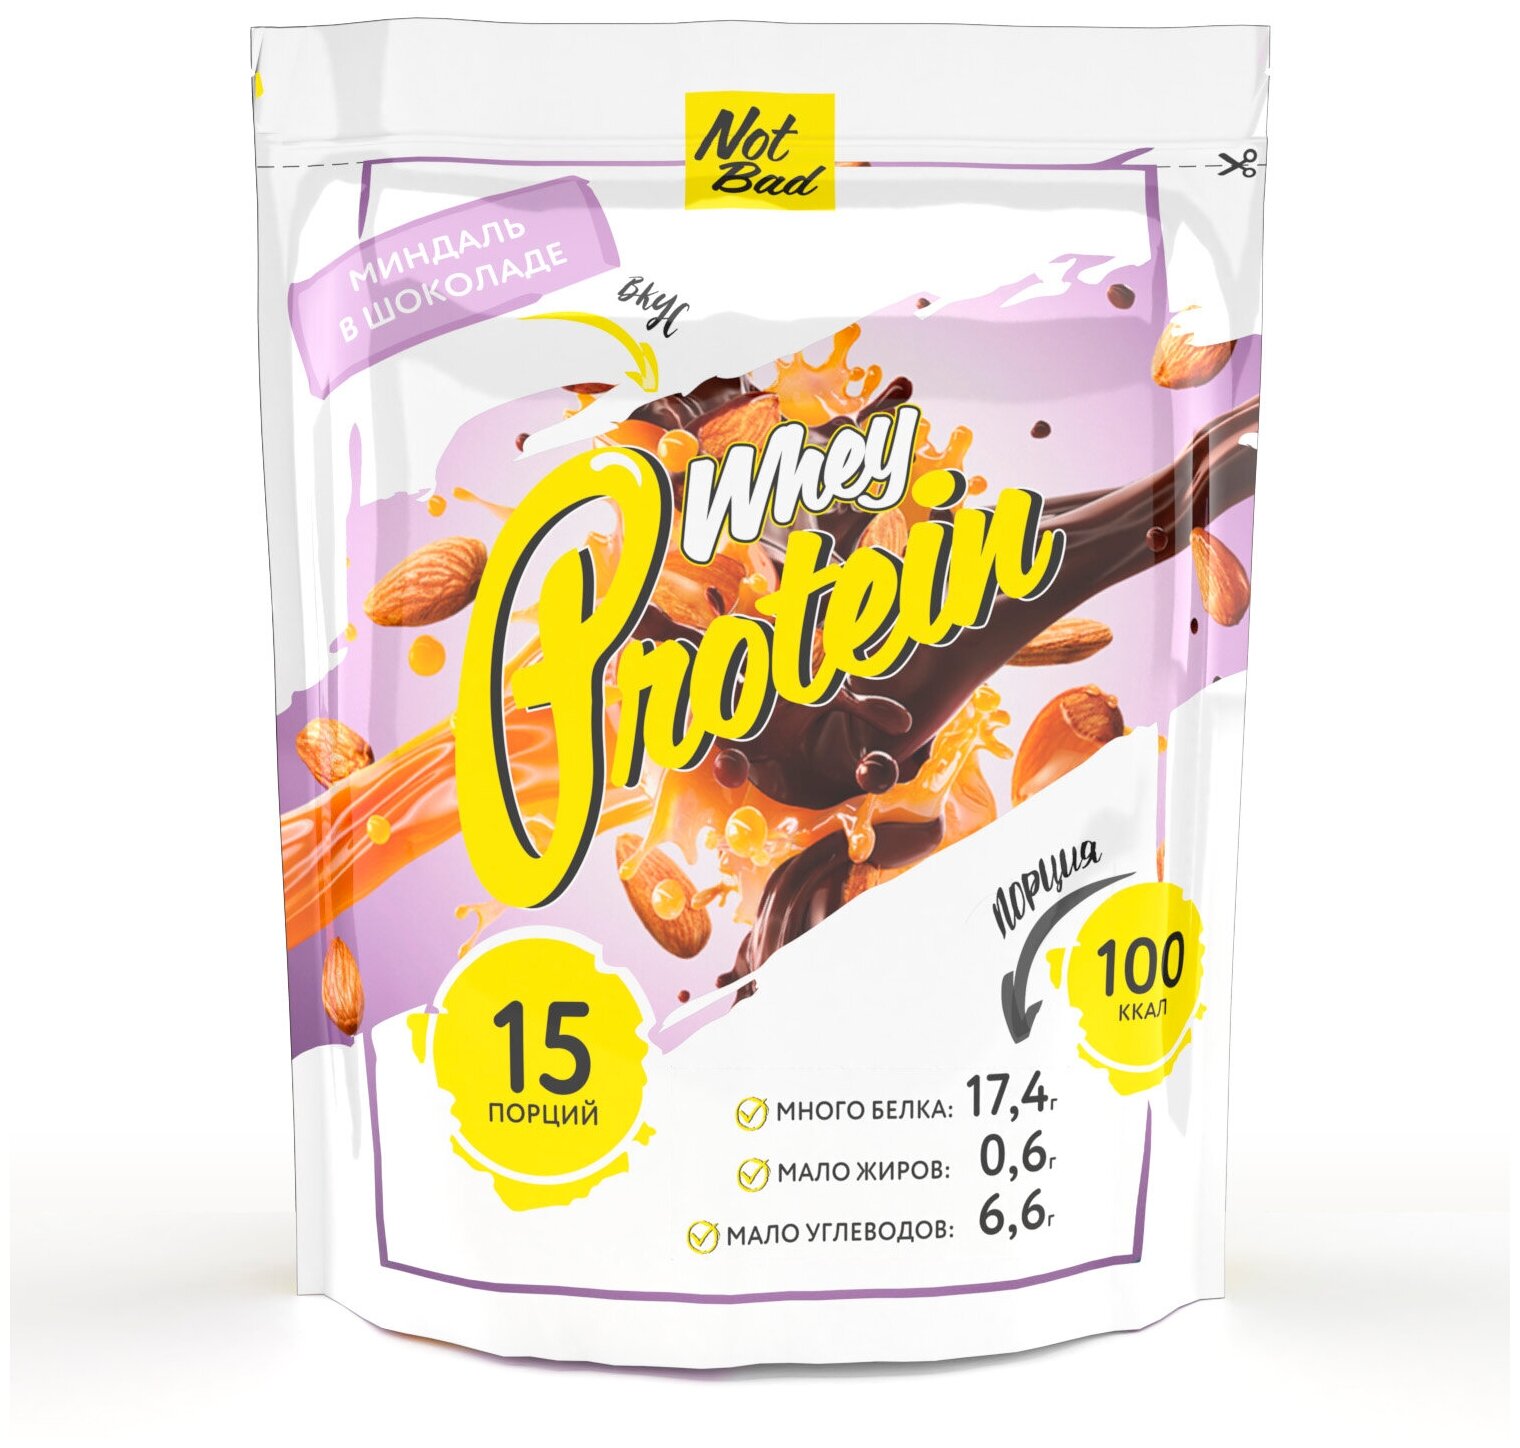 NOTBAD Whey Protein 450 г (Миндаль в шоколаде)